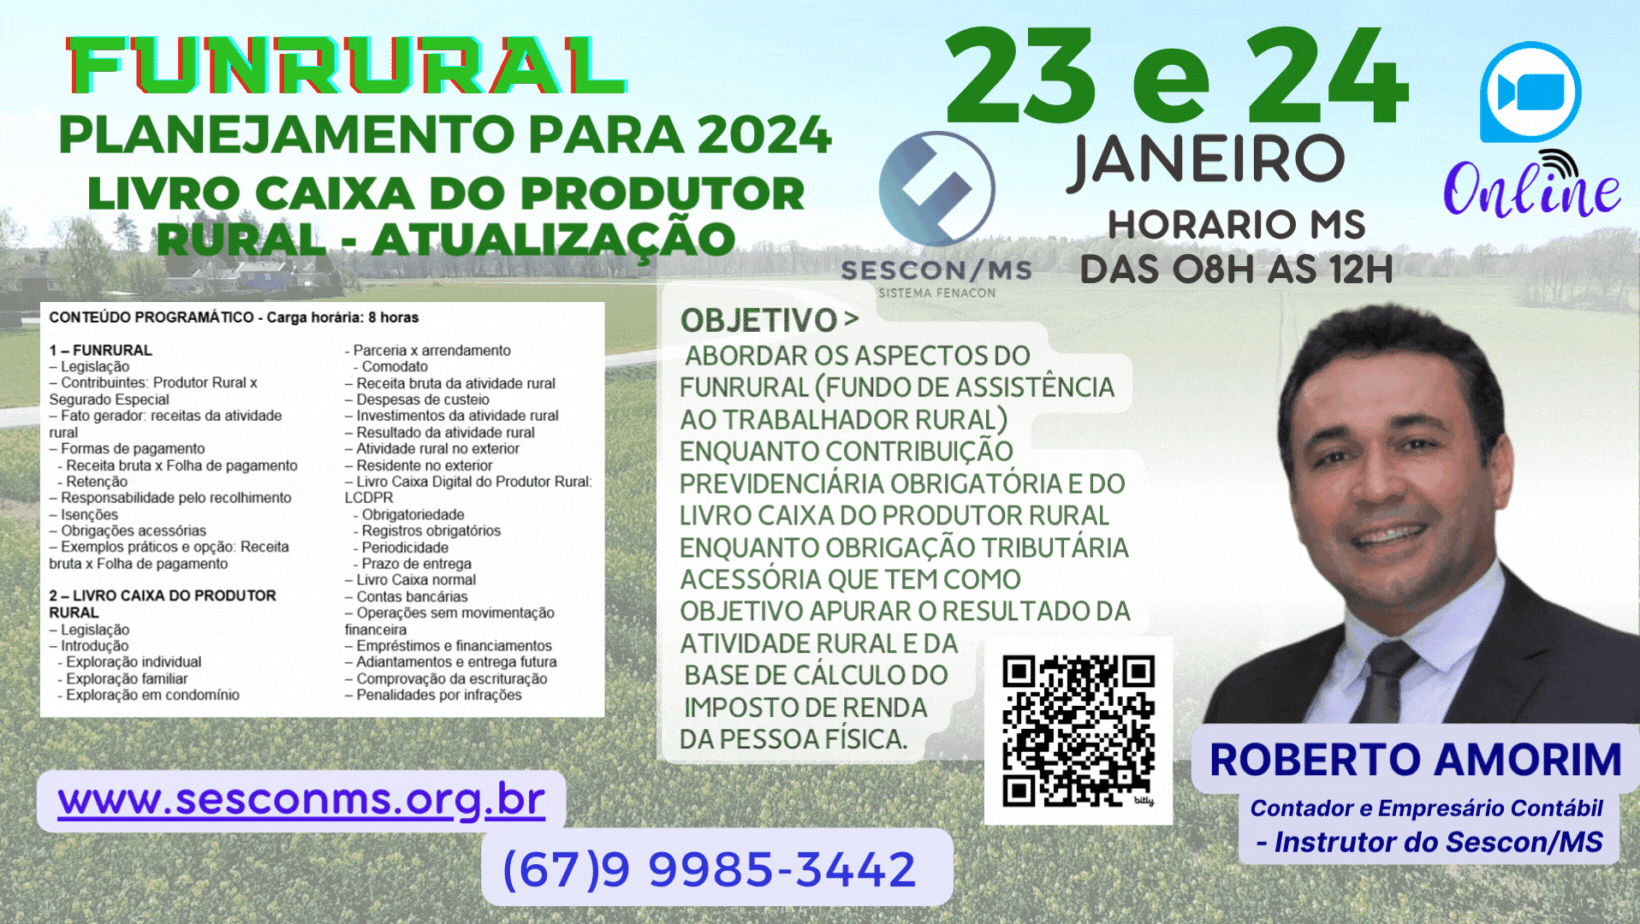 Funrural: Planejamento para 2024 Livro Caixa do Produtor Rural: Atualização